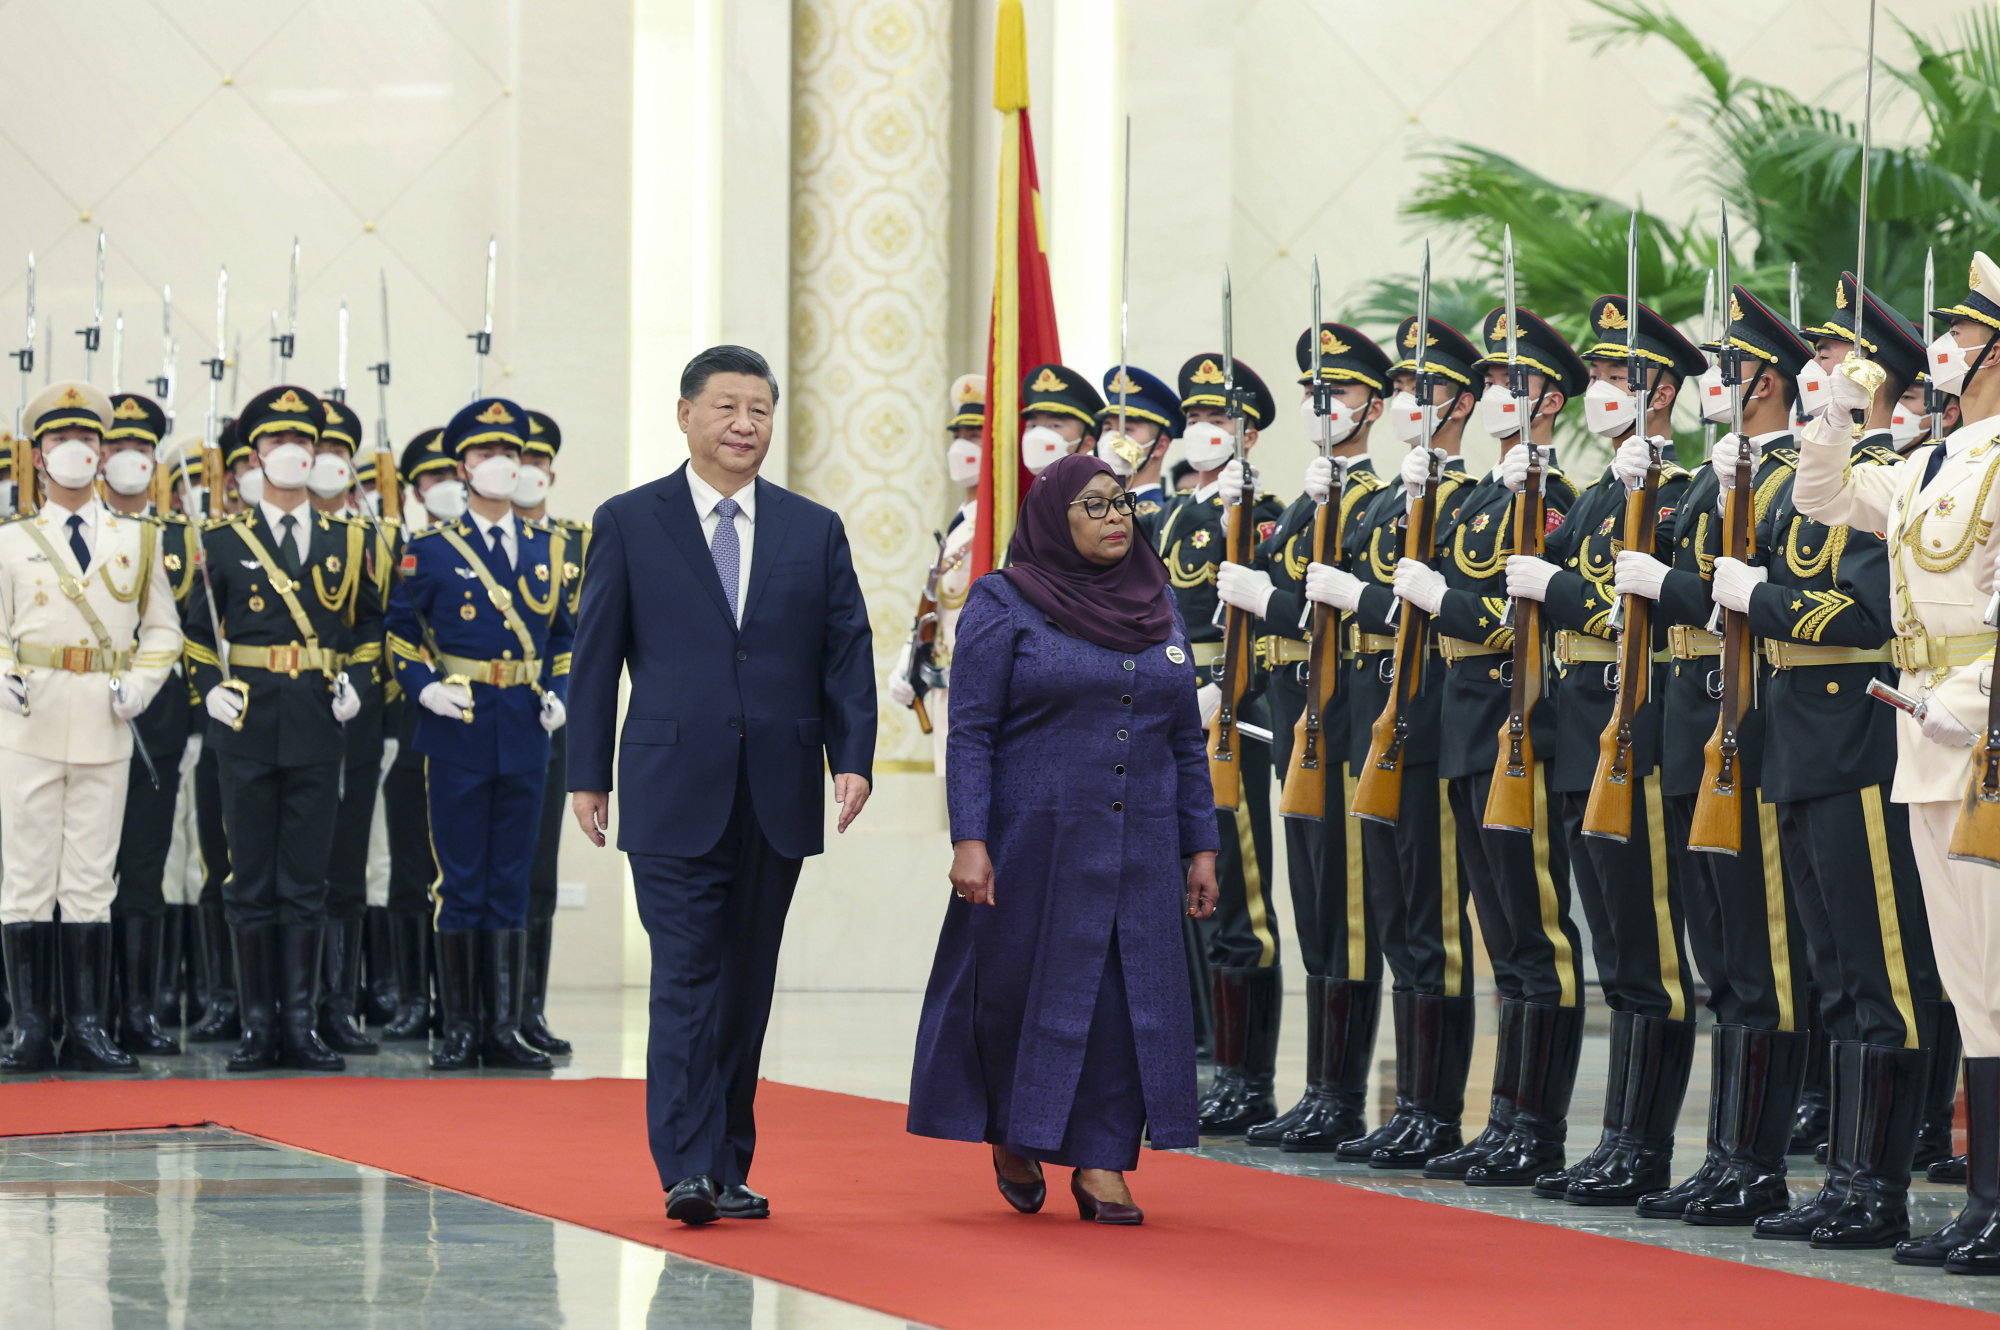 Chinese President Xi Jinping and Tanzanian President Samia Suluhu Hassan in Beijing. Photo: Xinhua